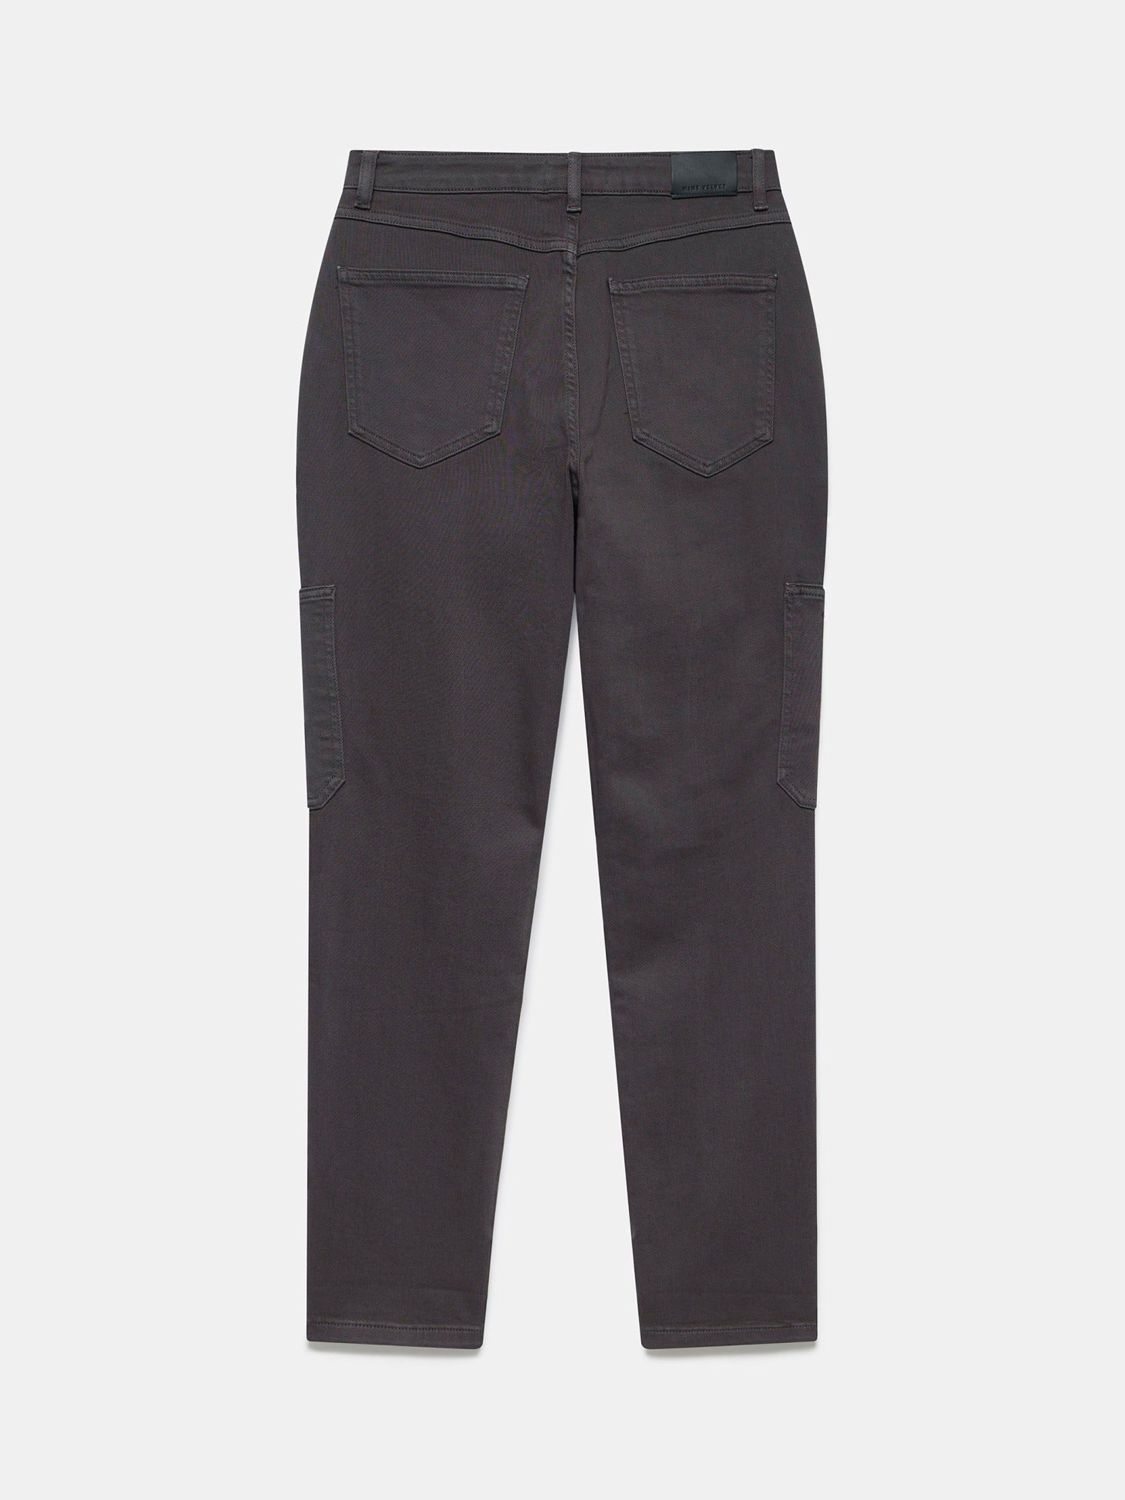 Mint Velvet Carpenter Slim Fit Jeans, Grey, 6R